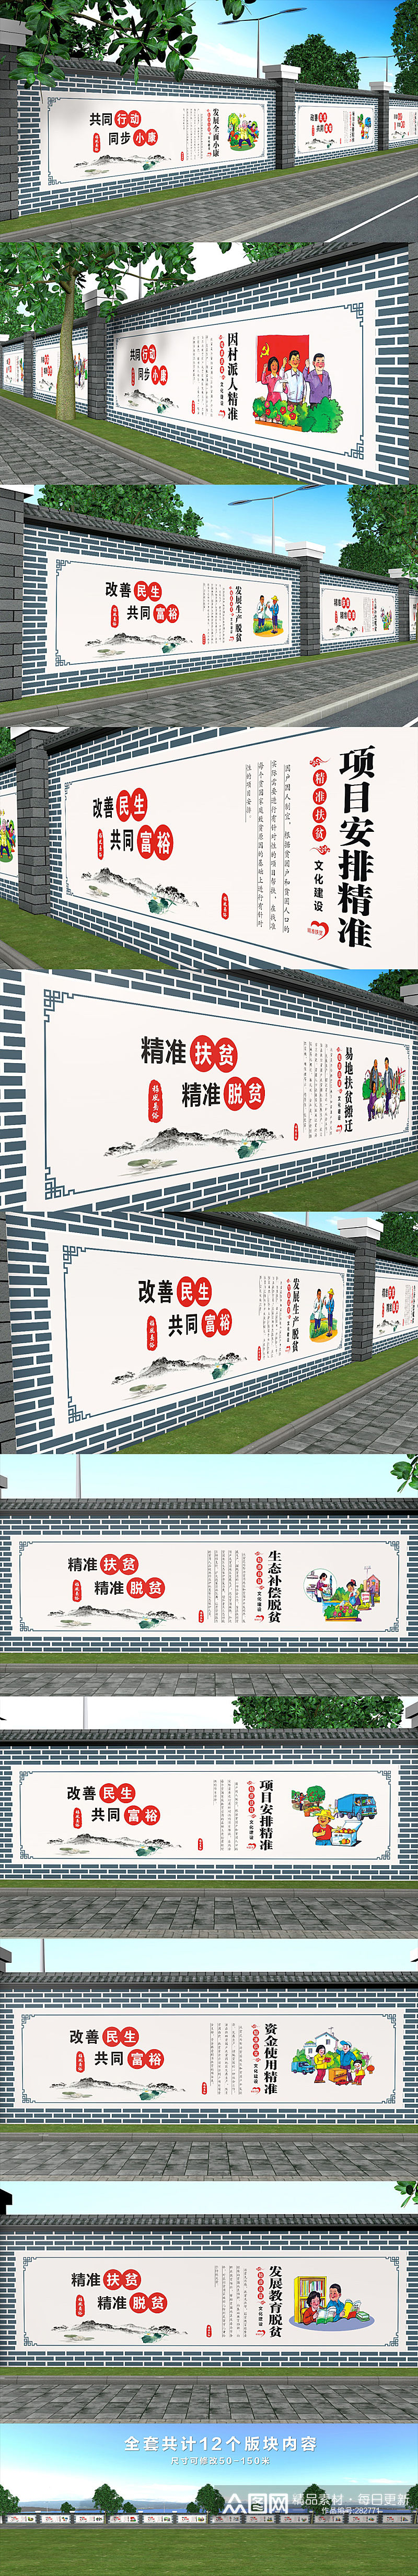 新农村建设乡村振兴围墙彩绘文化墙党建墙绘外墙 标语主题墙素材